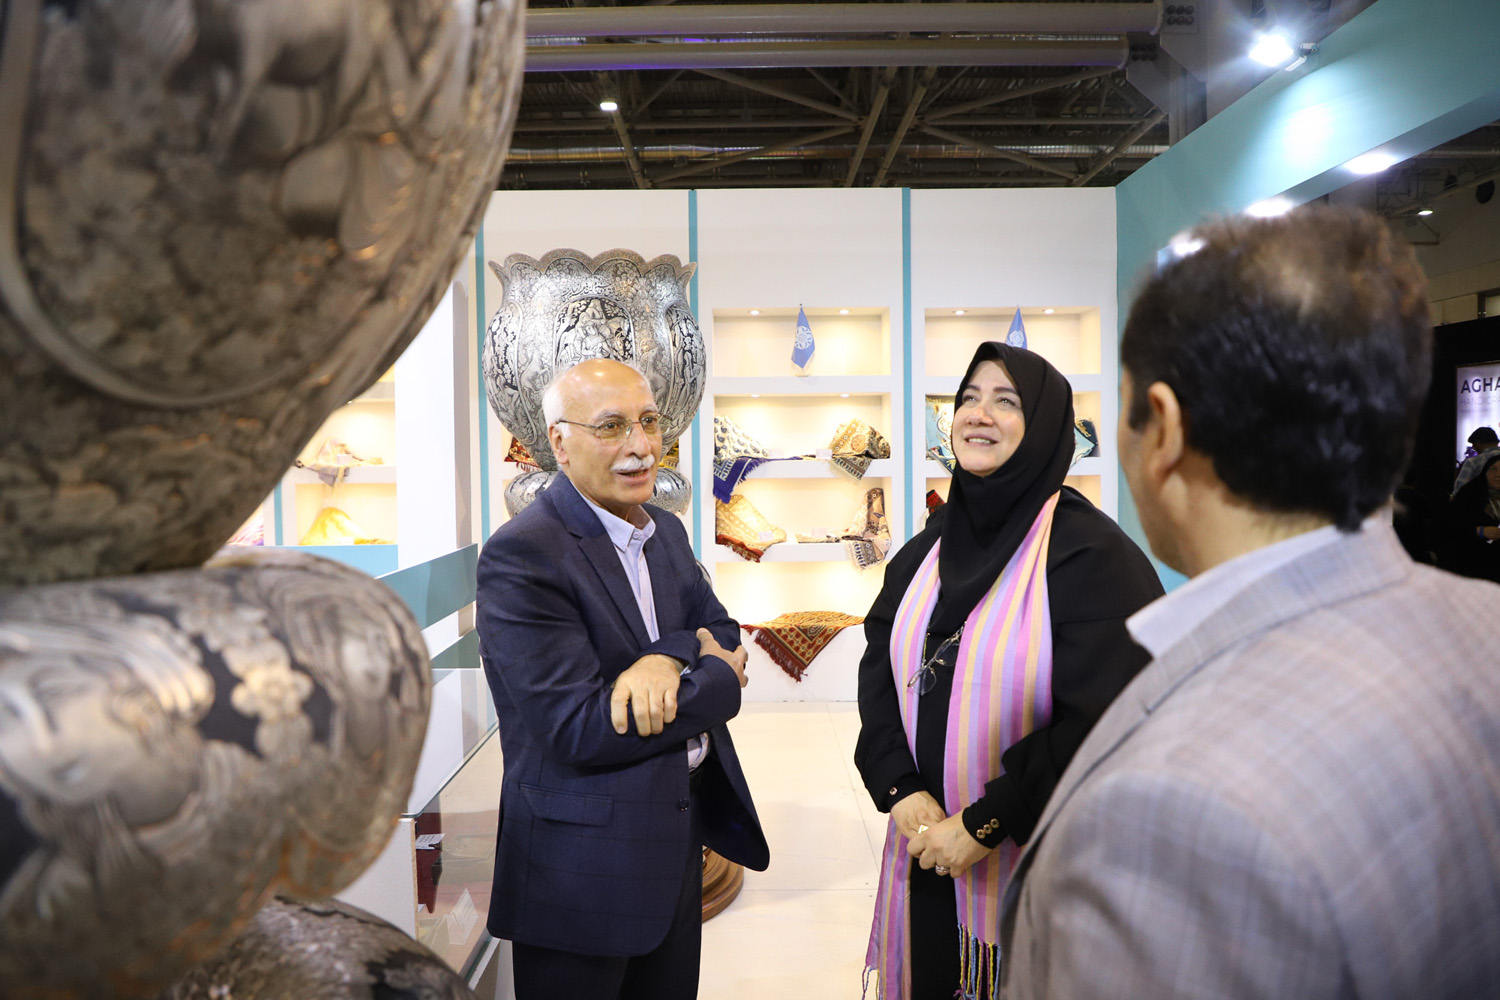 دیدار صمیمانه معاون صنایع‌دستی کشور با هنرمندان حاضر در دوازدهمین نمایشگاه تخصصی گردشگری، صنایع‌دستی و صنعت هتلداری اصفهان